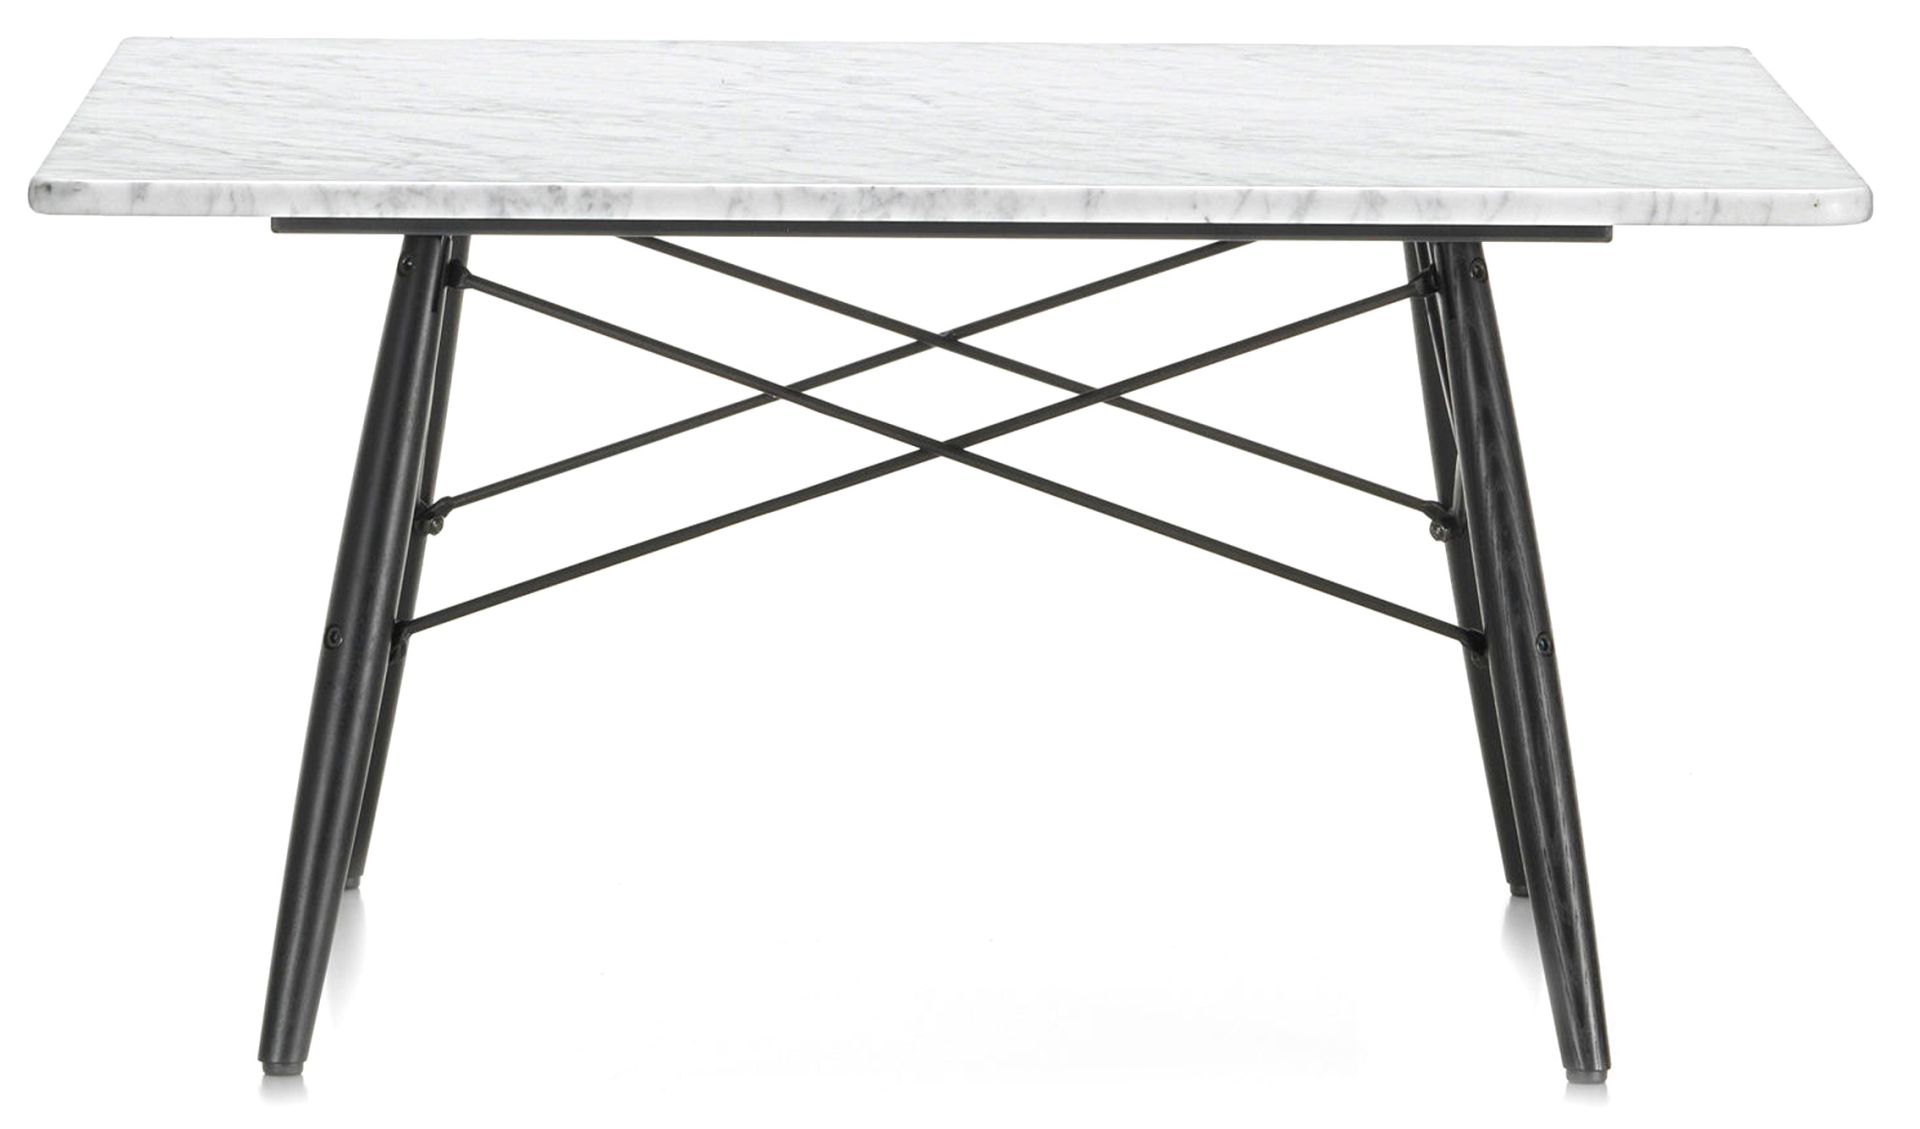 Vitra designové konferenční stoly Eames Coffee Table (76 x 76 cm) - DESIGNPROPAGANDA